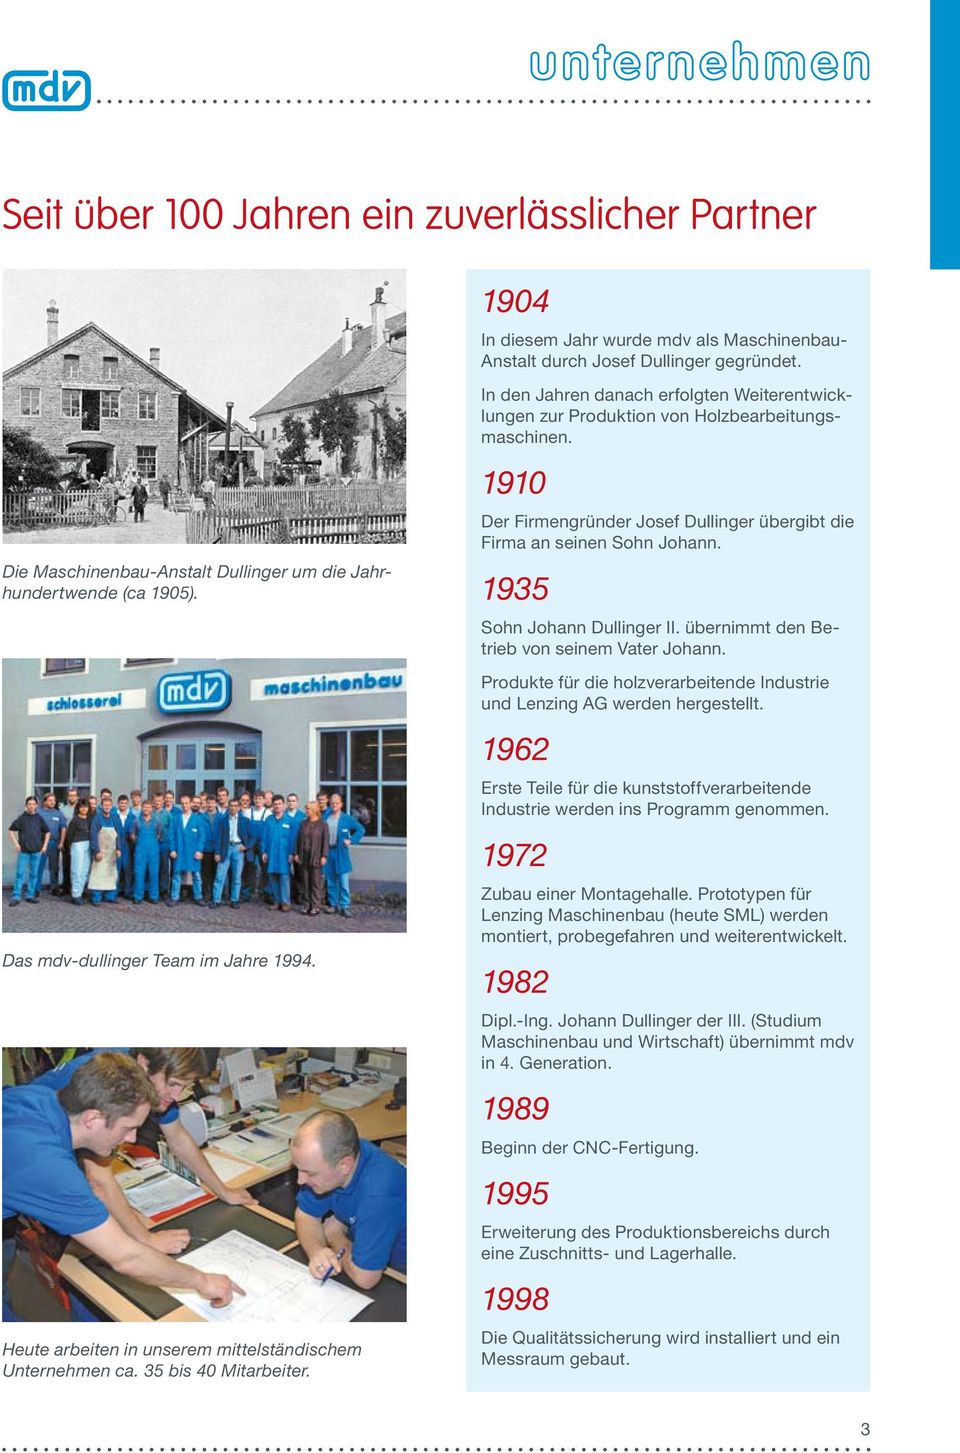 In den Jahren danach erfolgten Weiterentwicklungen zur Produktion von Holzbearbeitungsmaschinen. 1910 Der Firmengründer Josef Dullinger übergibt die Firma an seinen Sohn Johann.